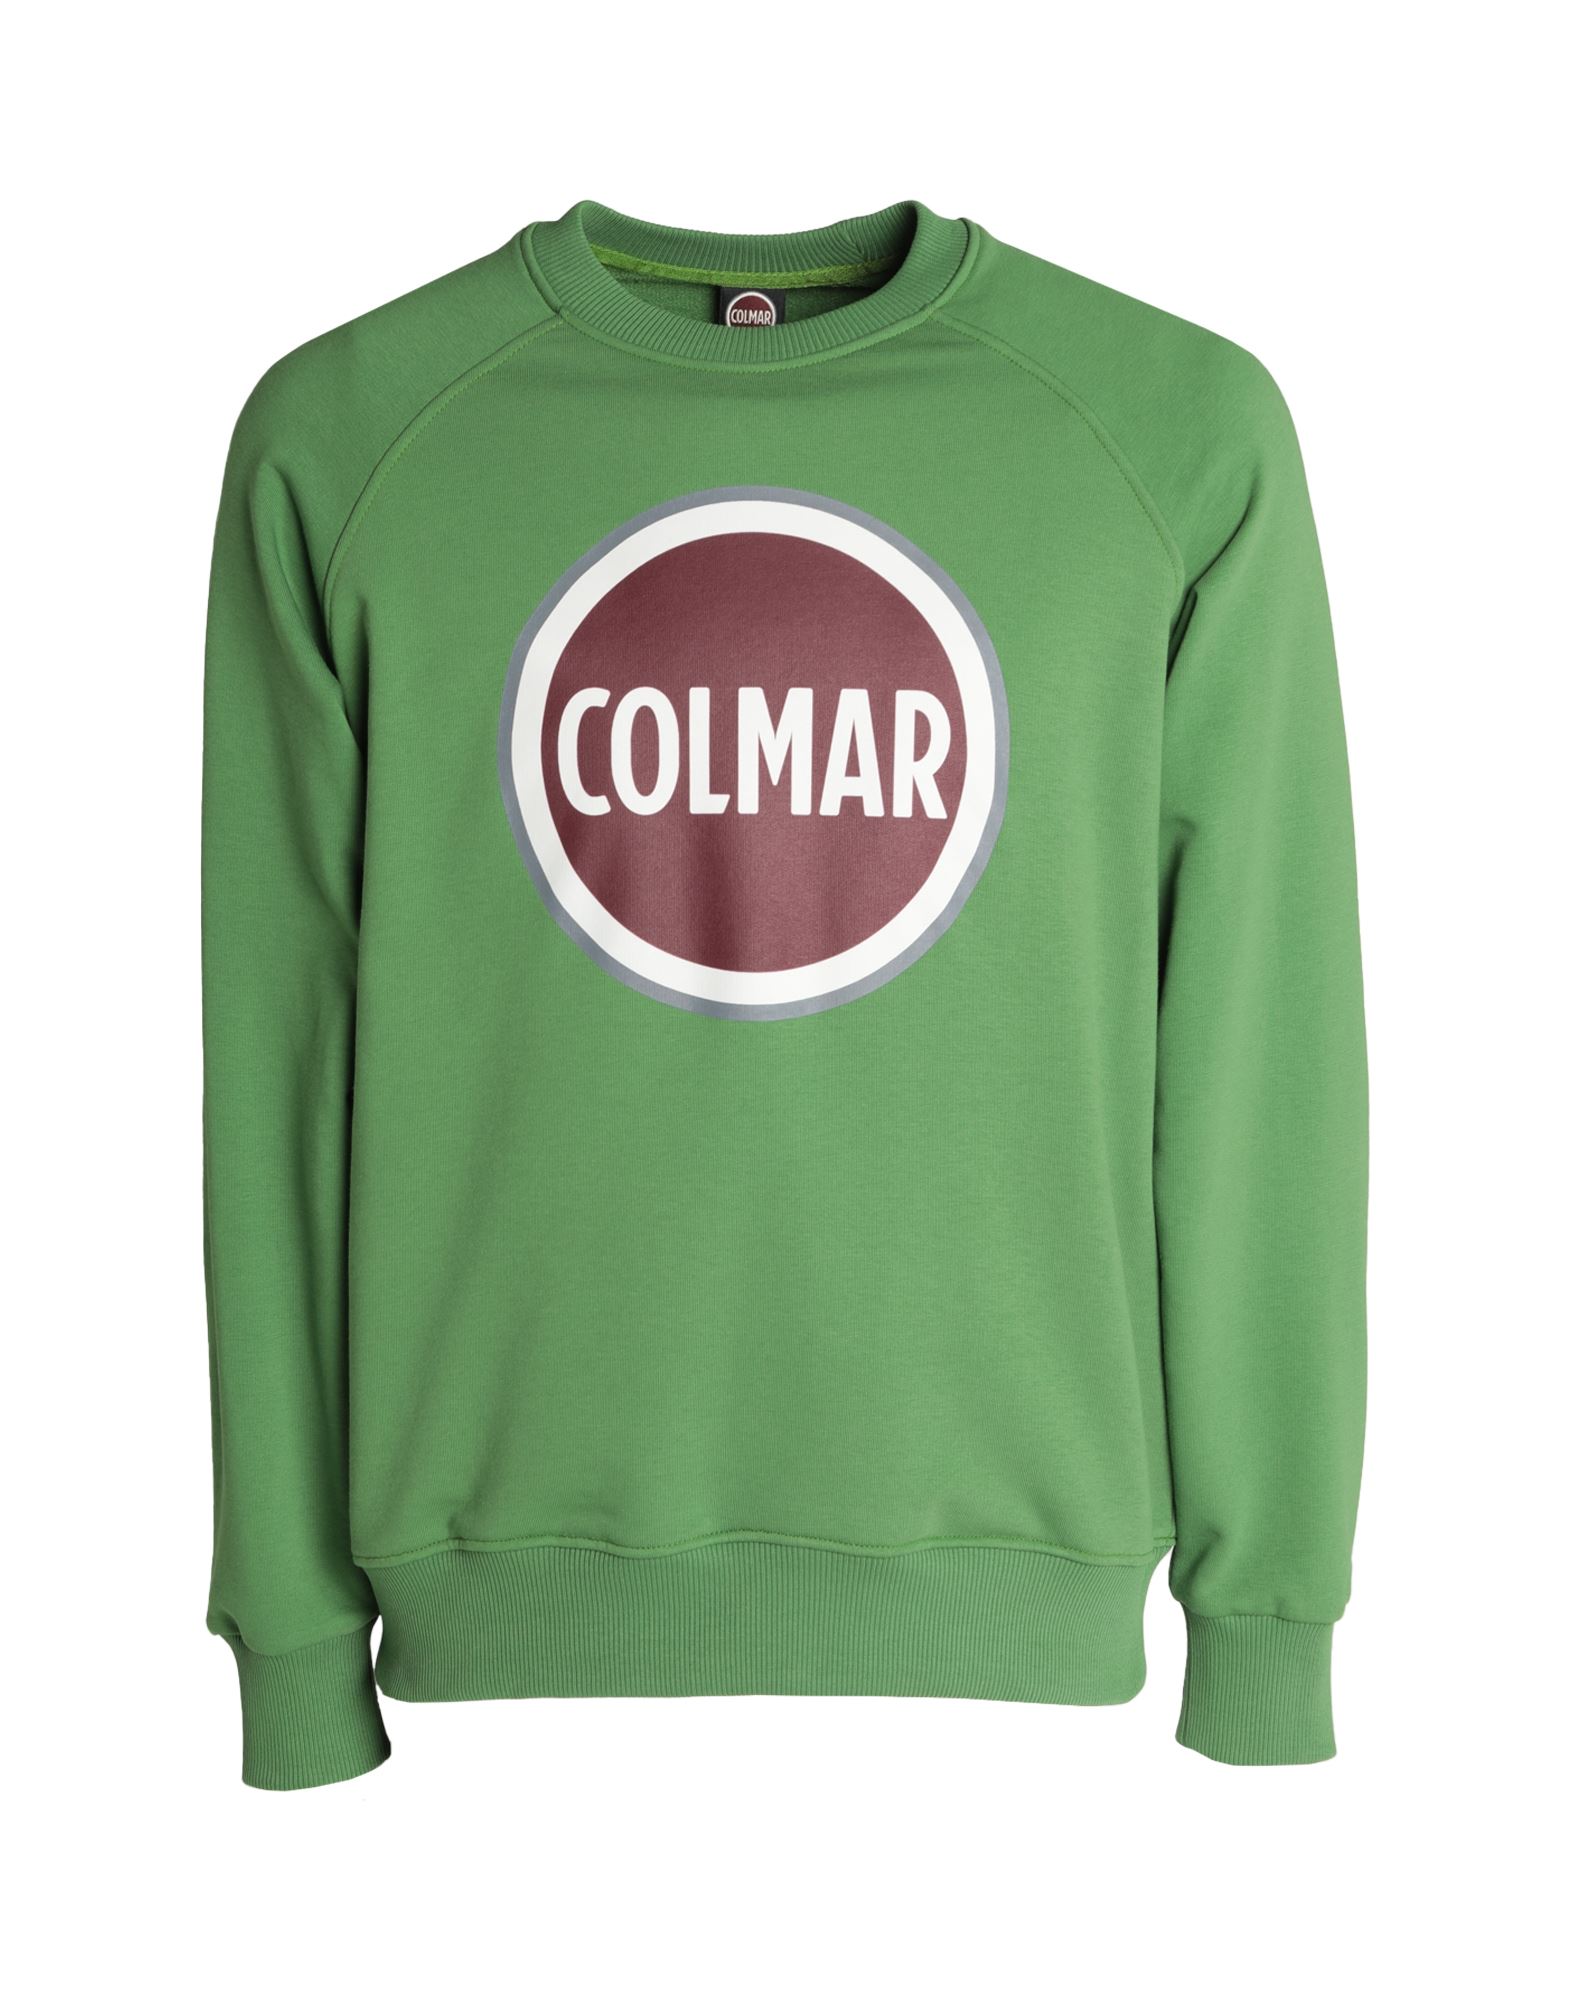 COLMAR Sweatshirt Herren Grün von COLMAR